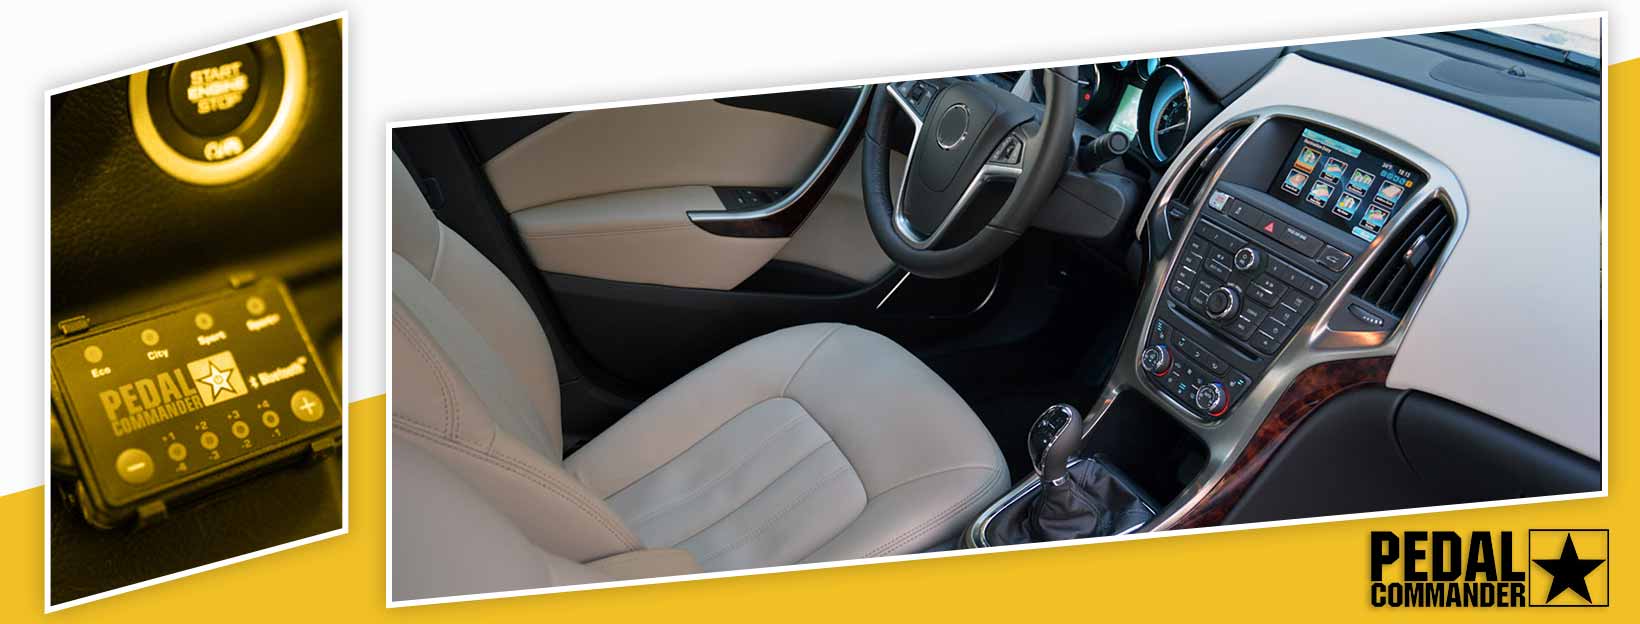 Pedal Commander for Buick Verano - interior